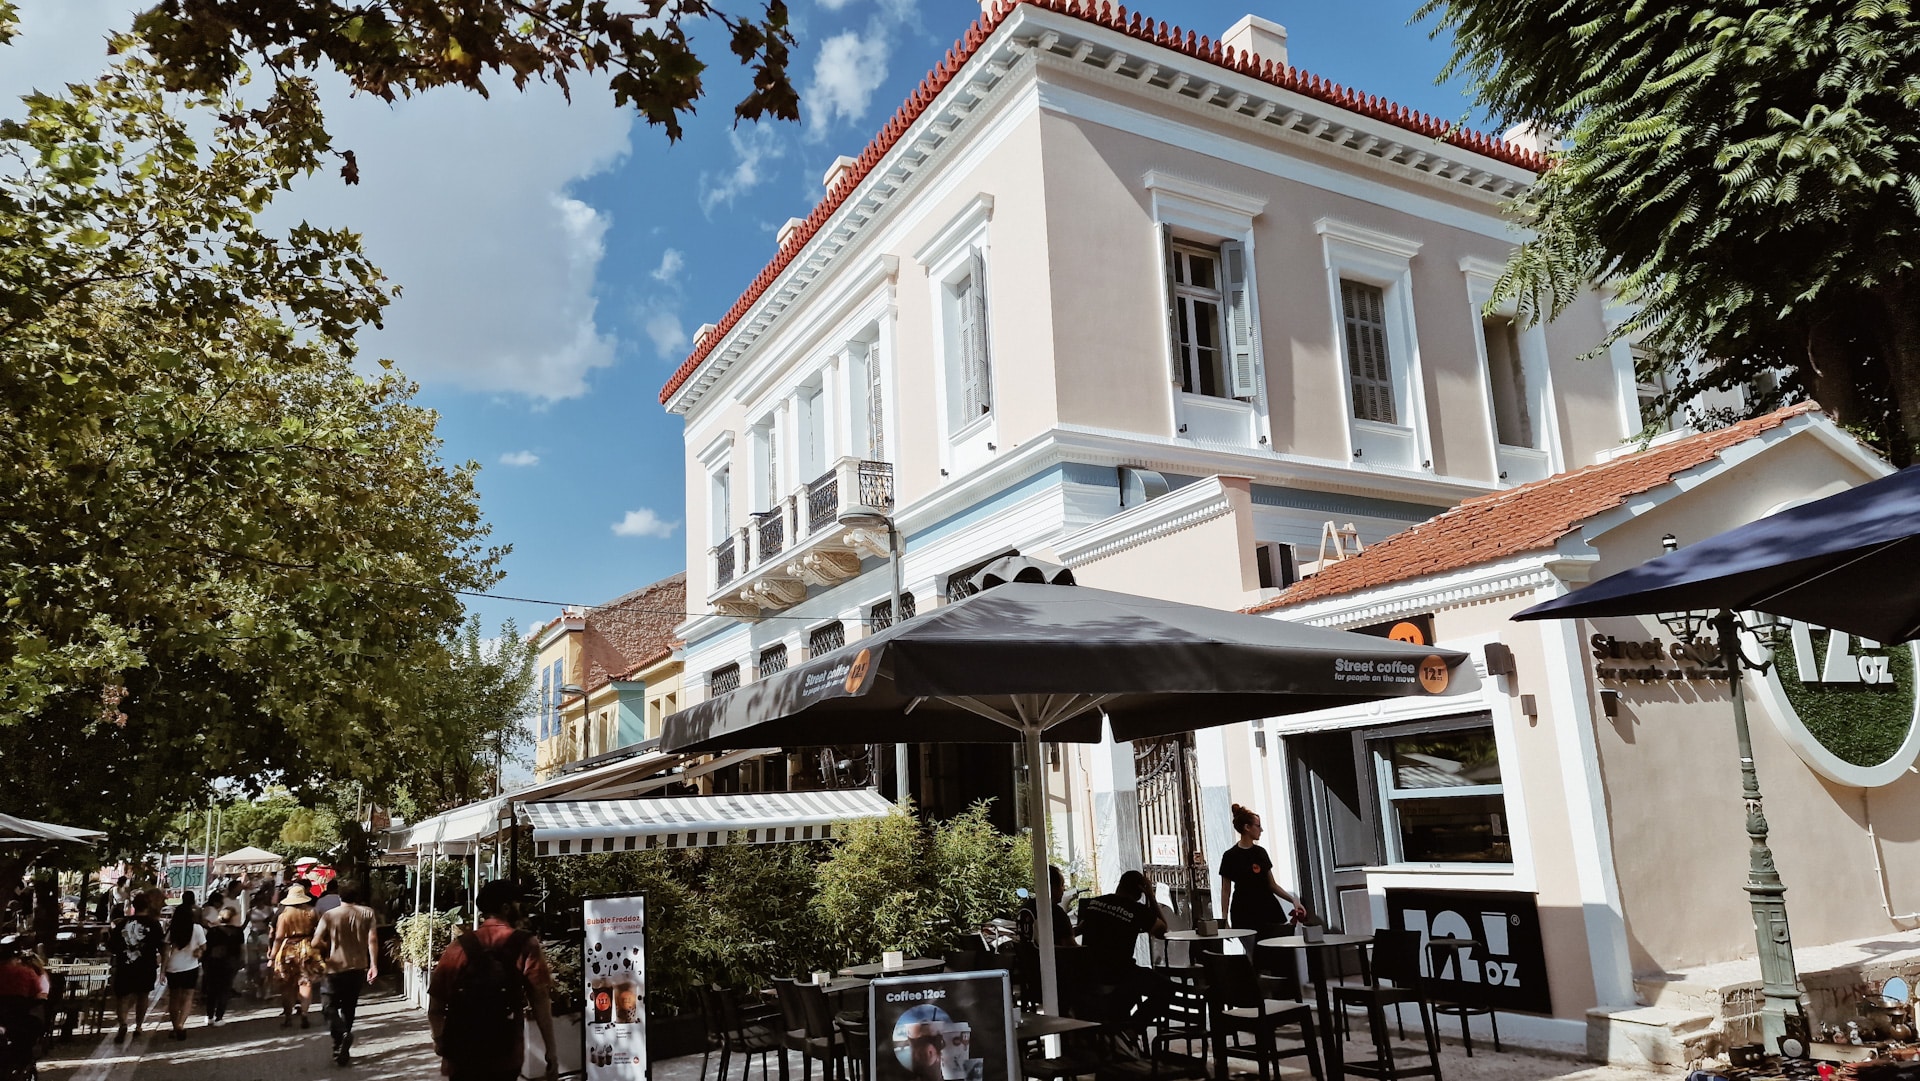 Situado cerca del Ágora Antigua y del Foro Romano, Monastiraki es un animado barrio conocido por su vibrante mercadillo y su bullicioso ambiente.